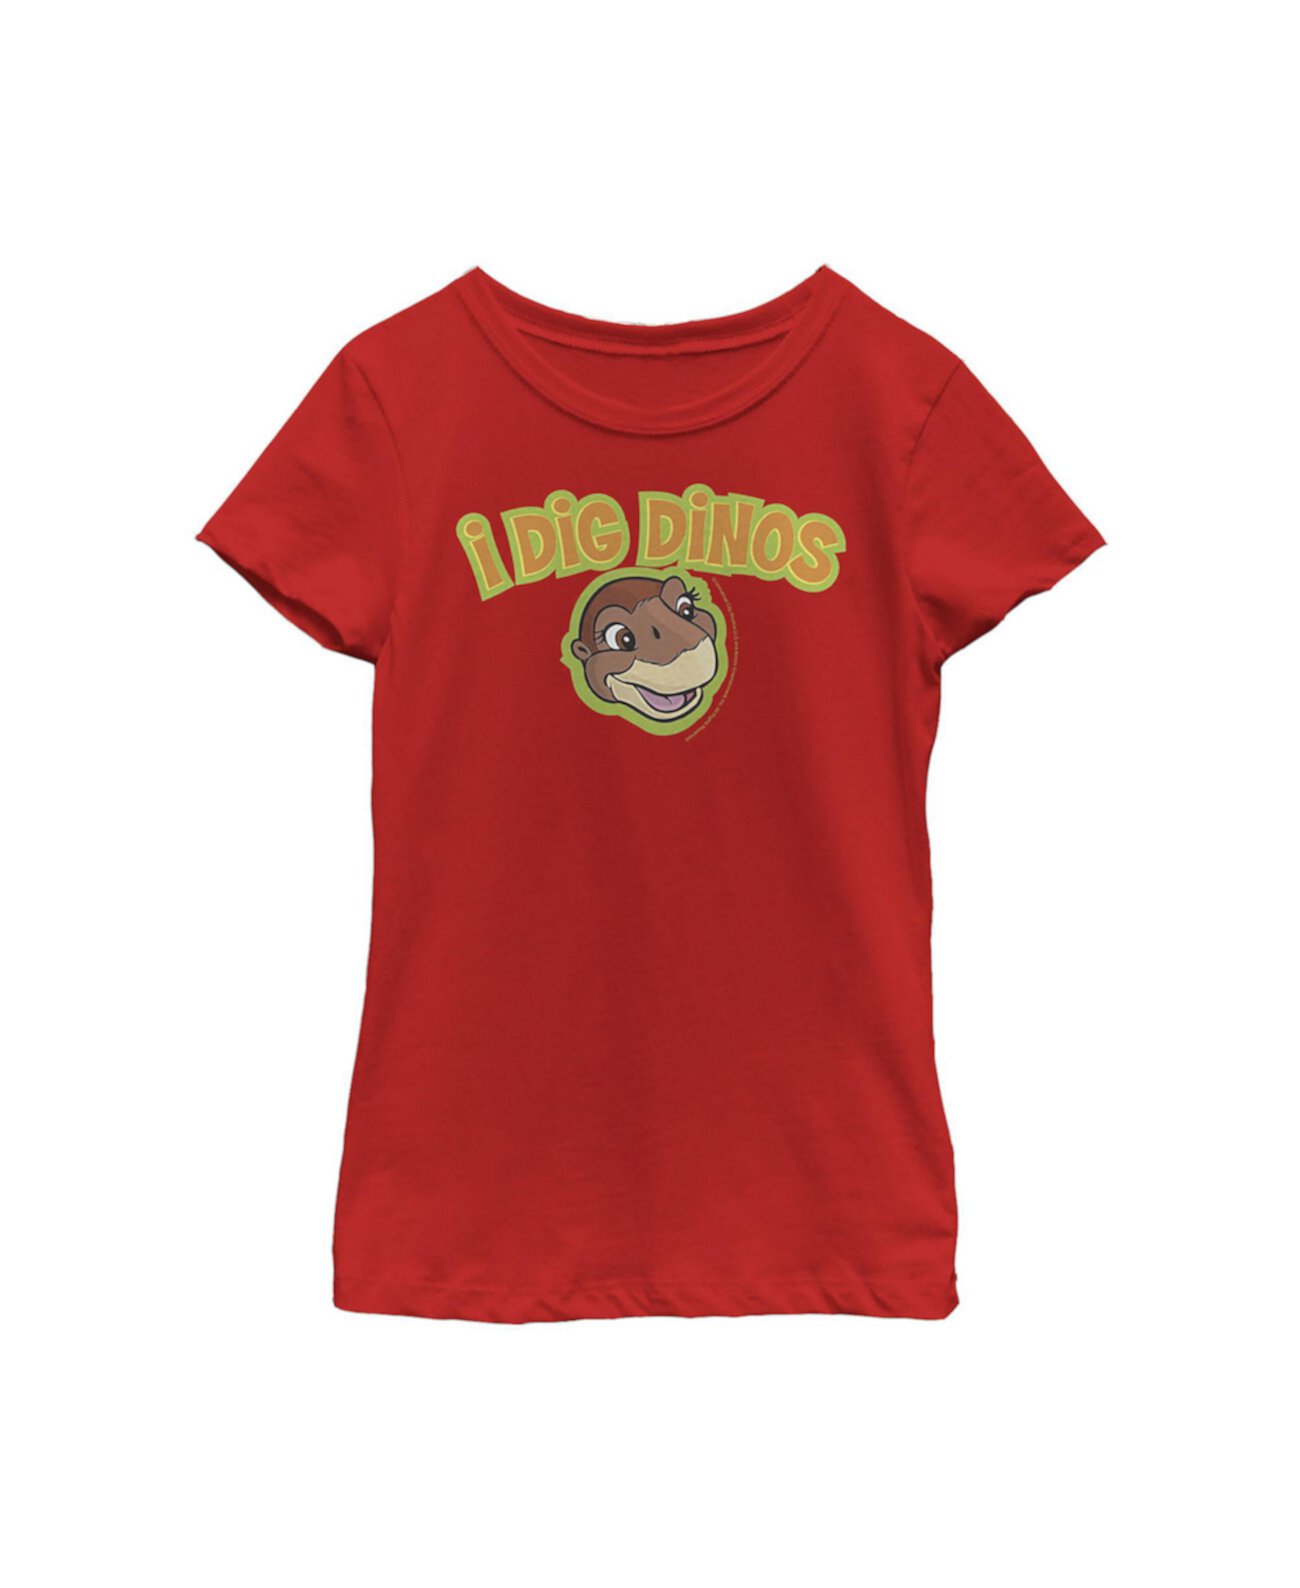 Детская футболка «Земля до начала времён» для девочек Littlefoot Digs Dinos NBC Universal